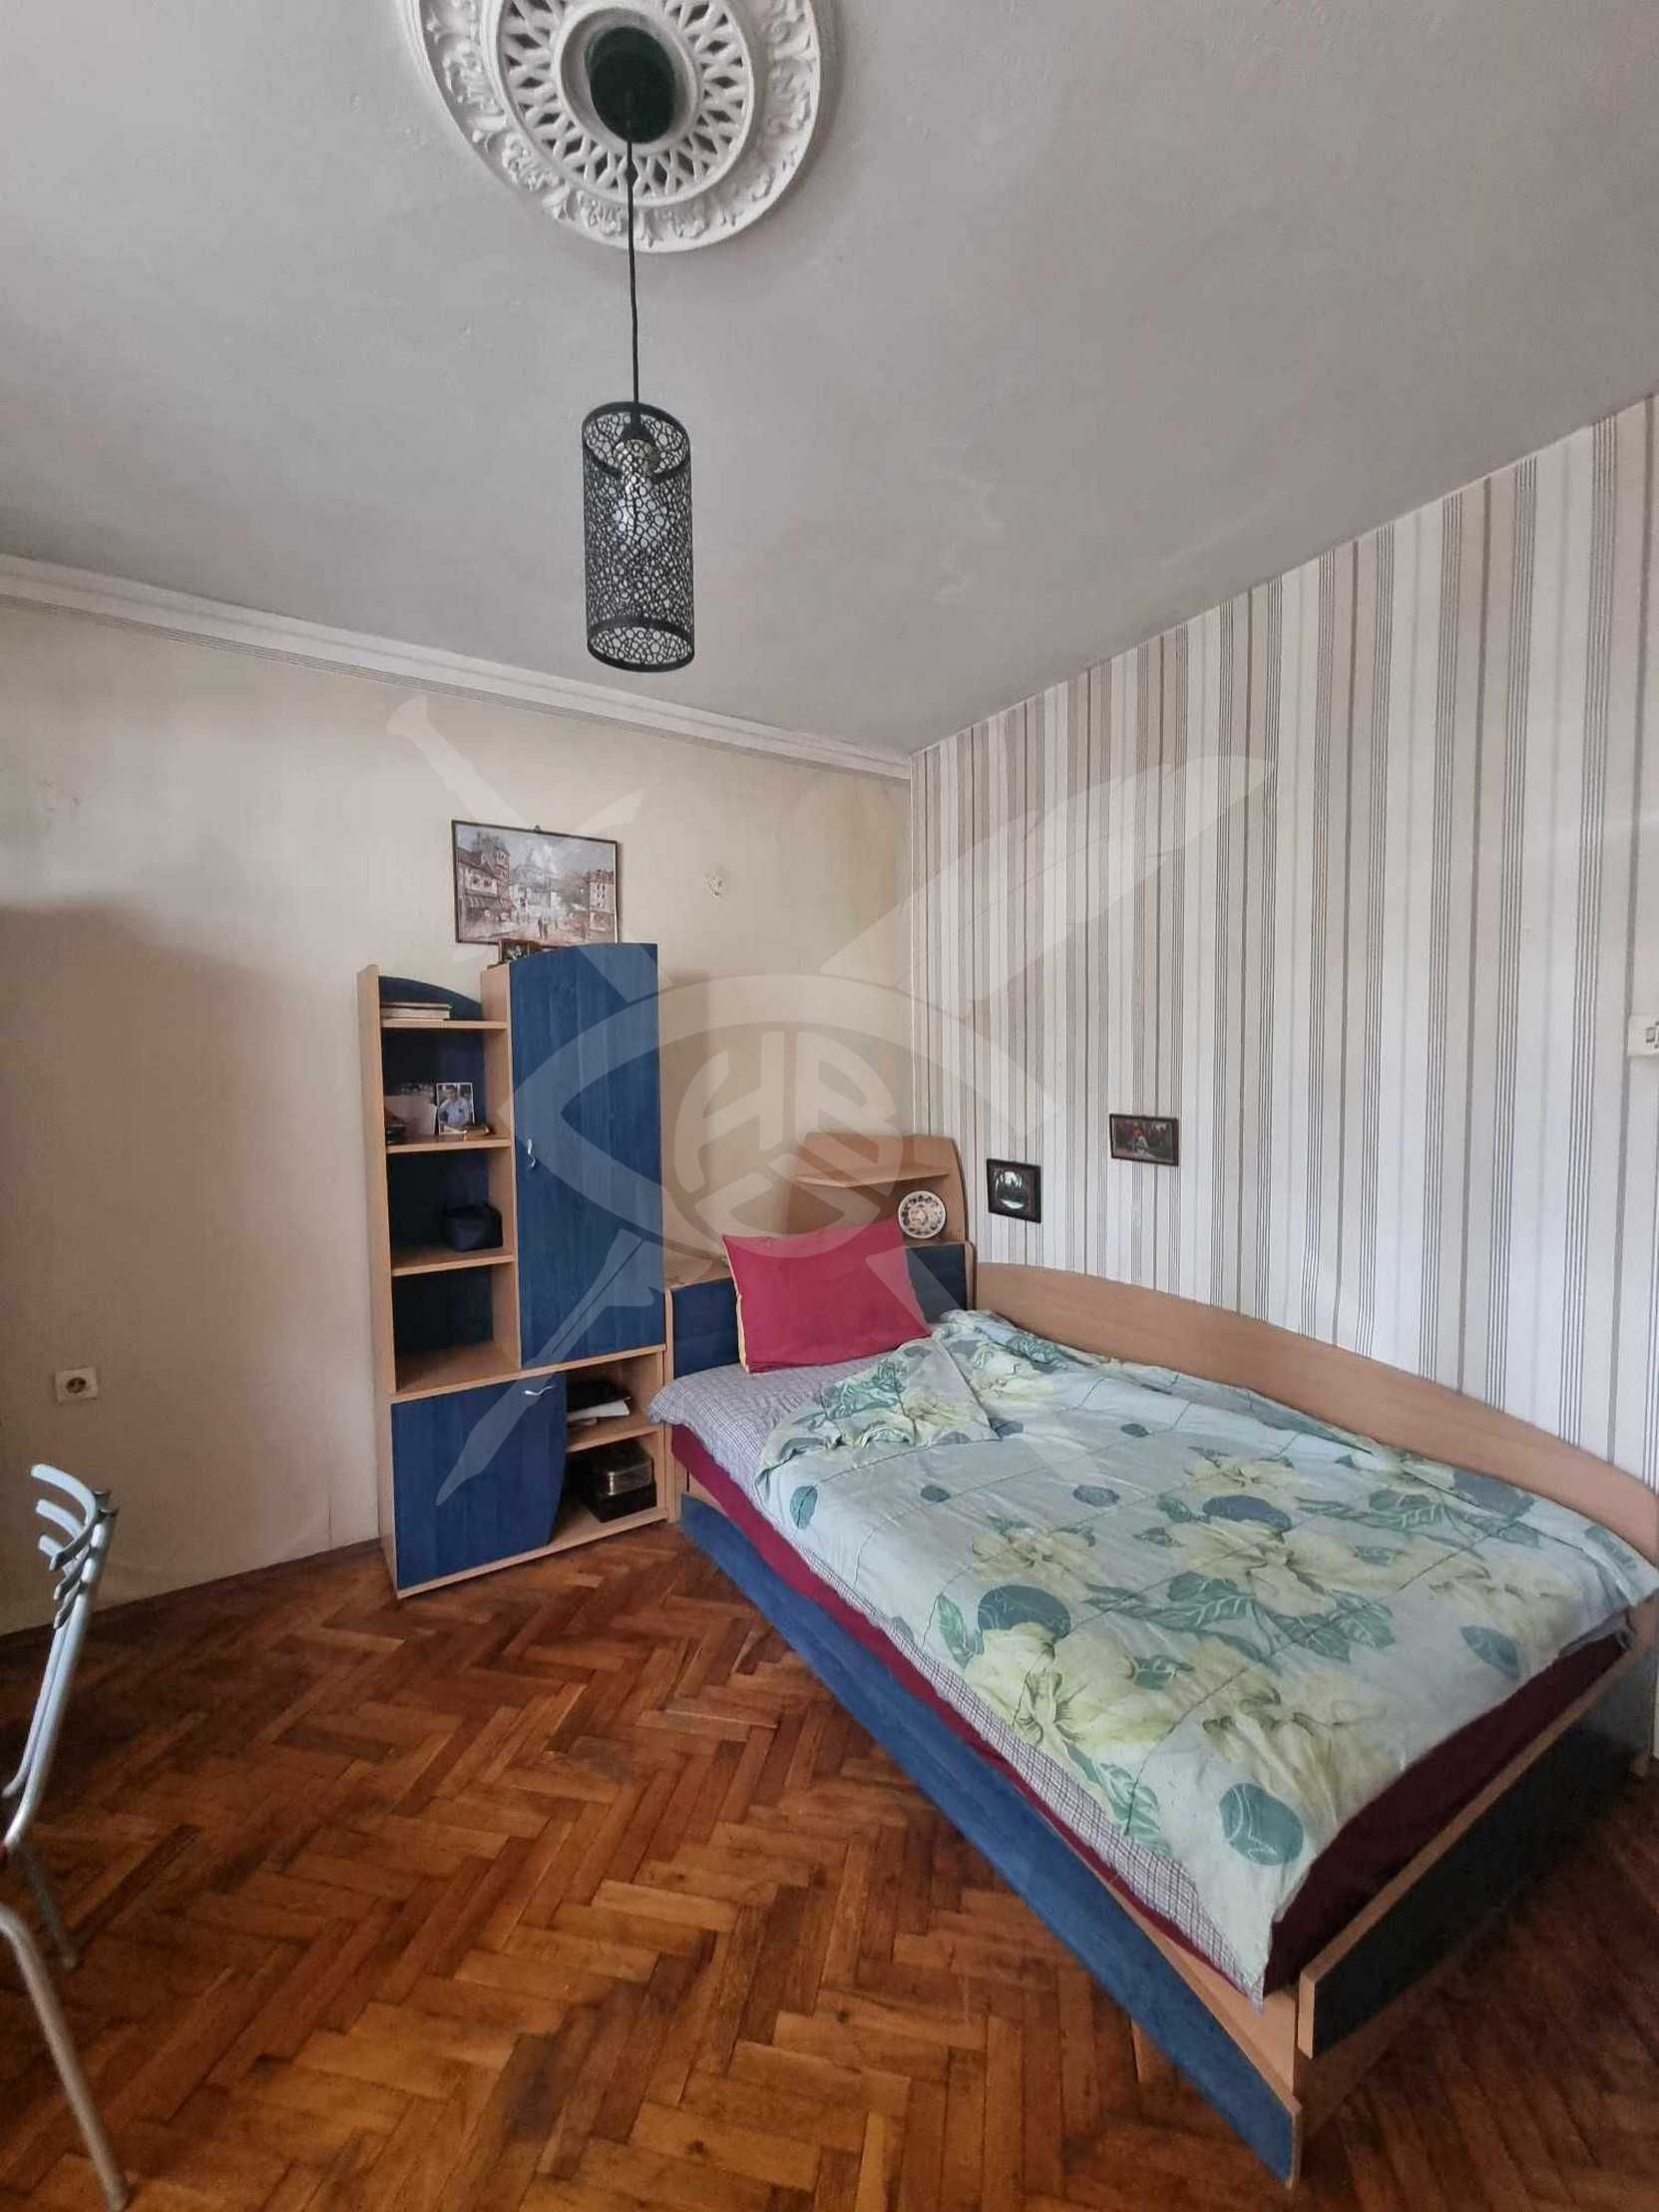 Едностаен апартамент в района на Колхозен пазар - 161273